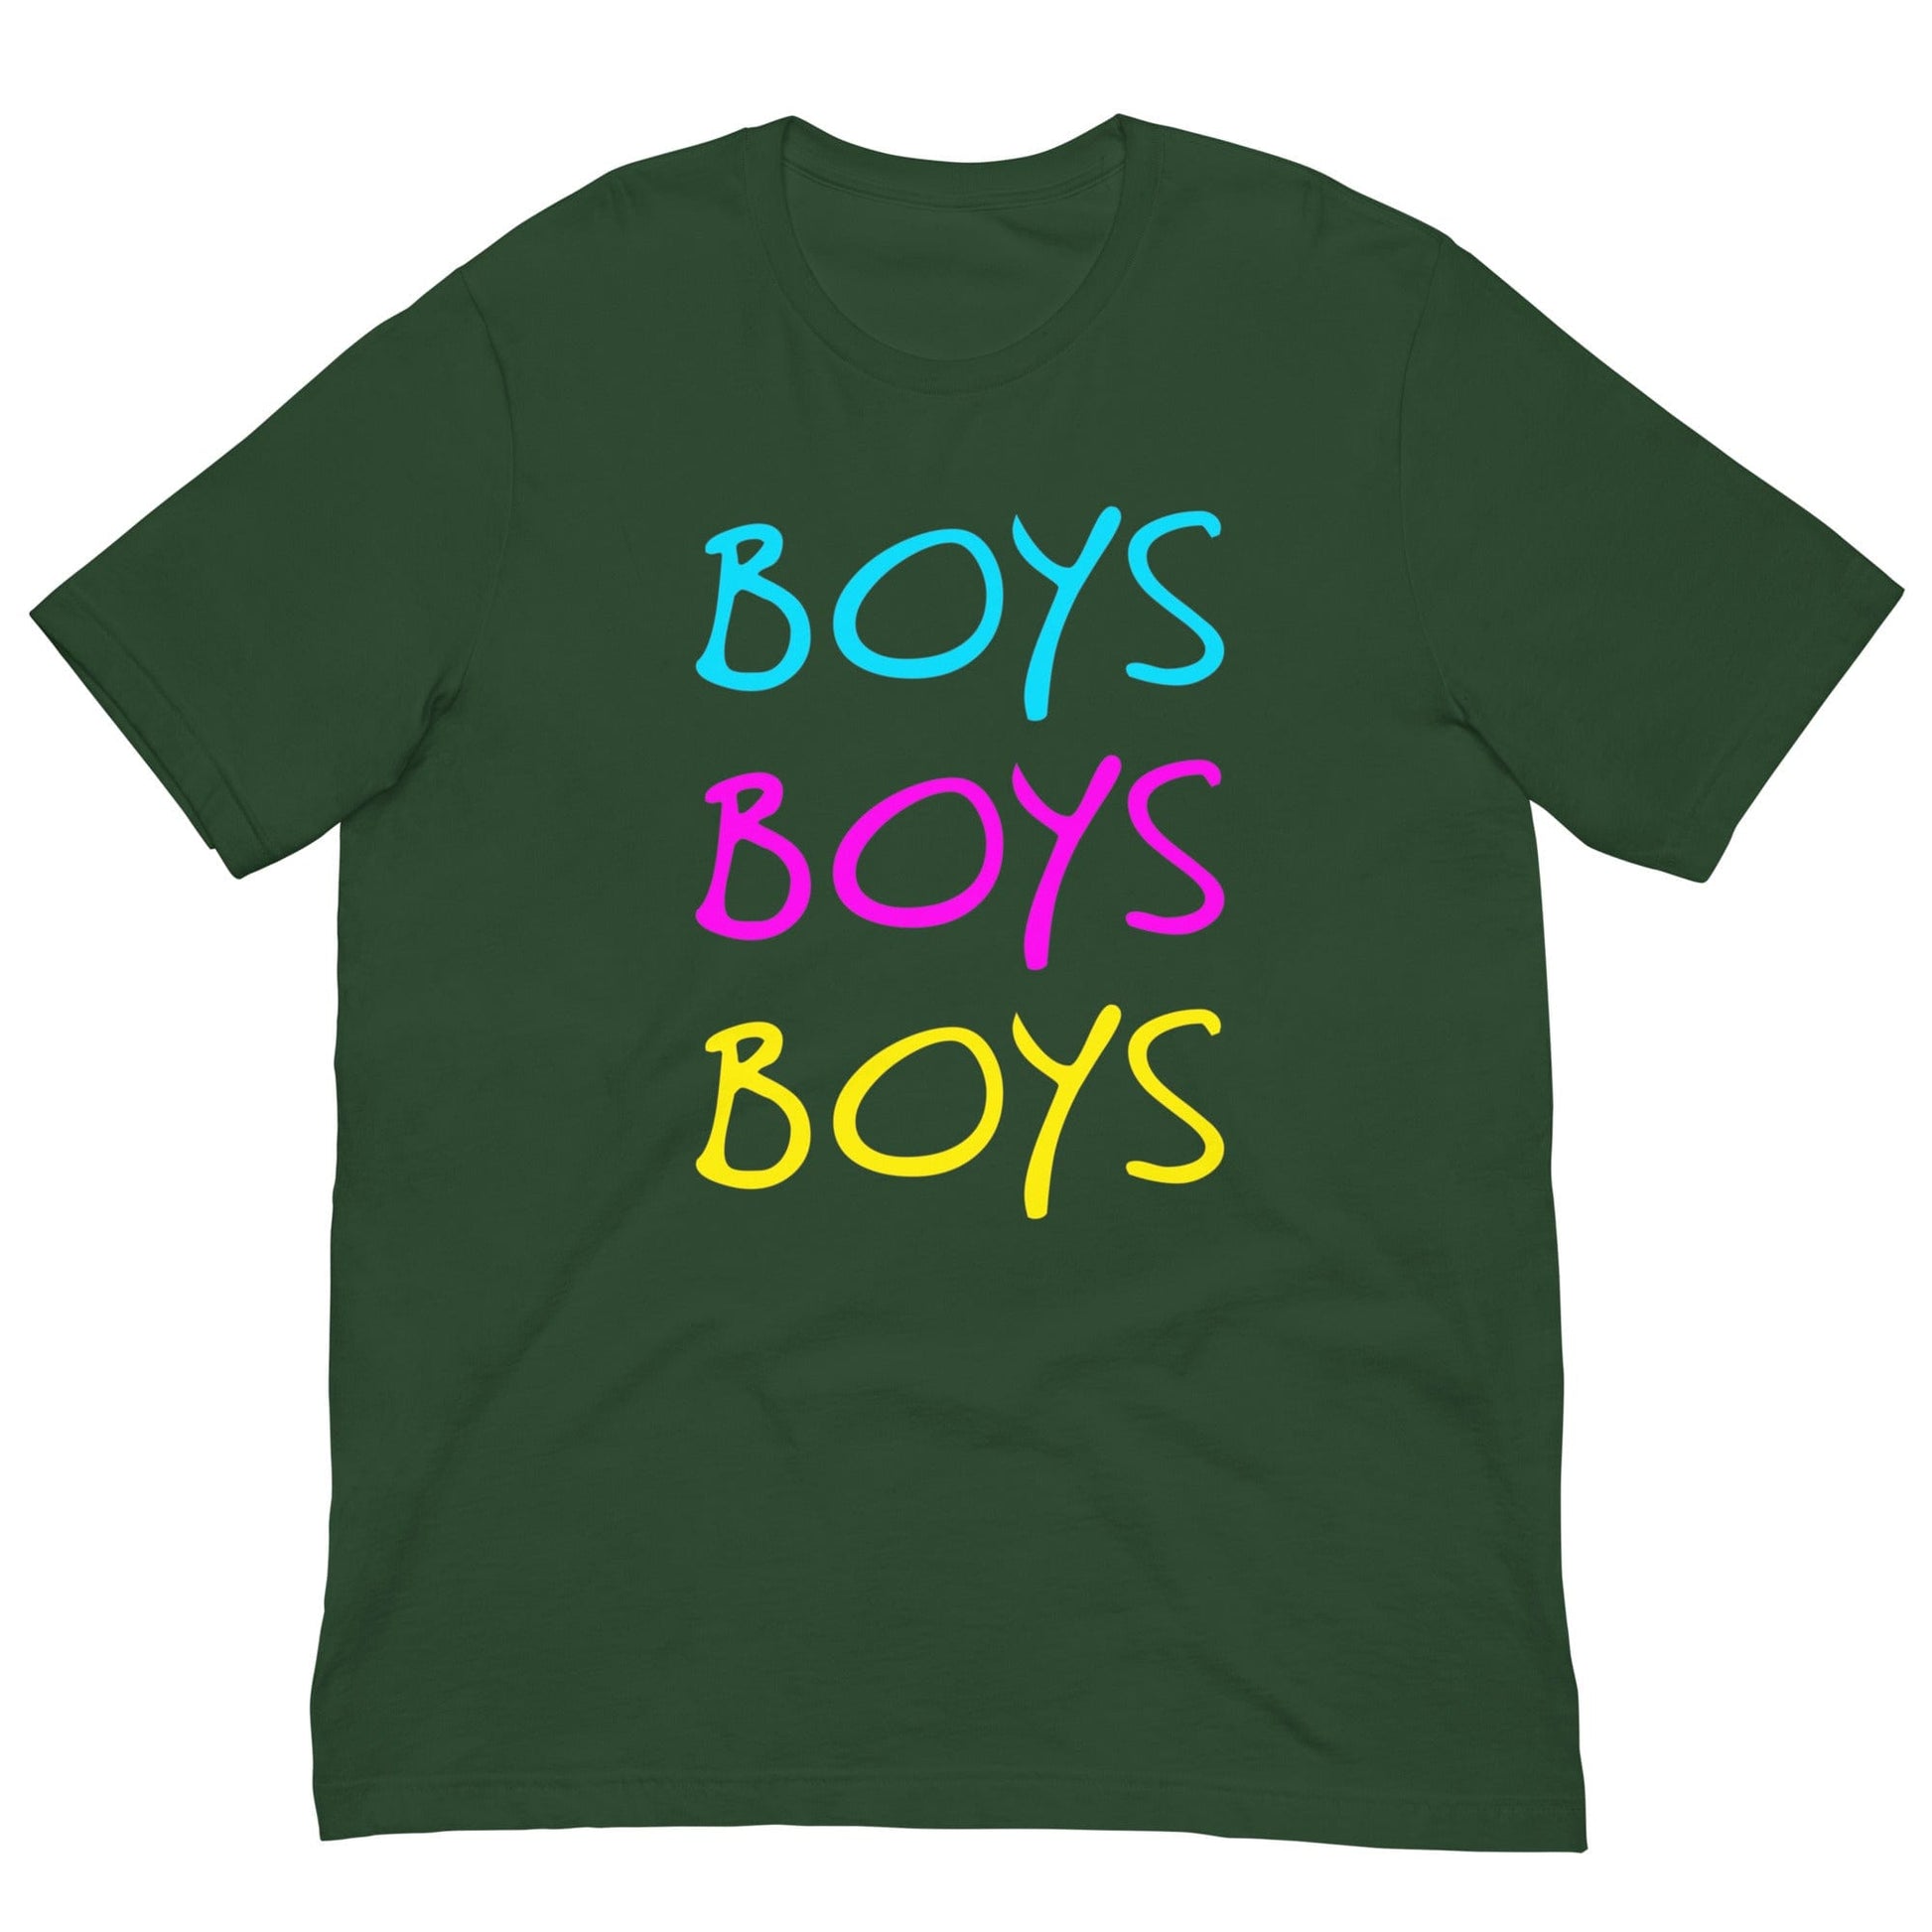 Boys, Boys, Boys LGBT Love T-shirt Forest / S